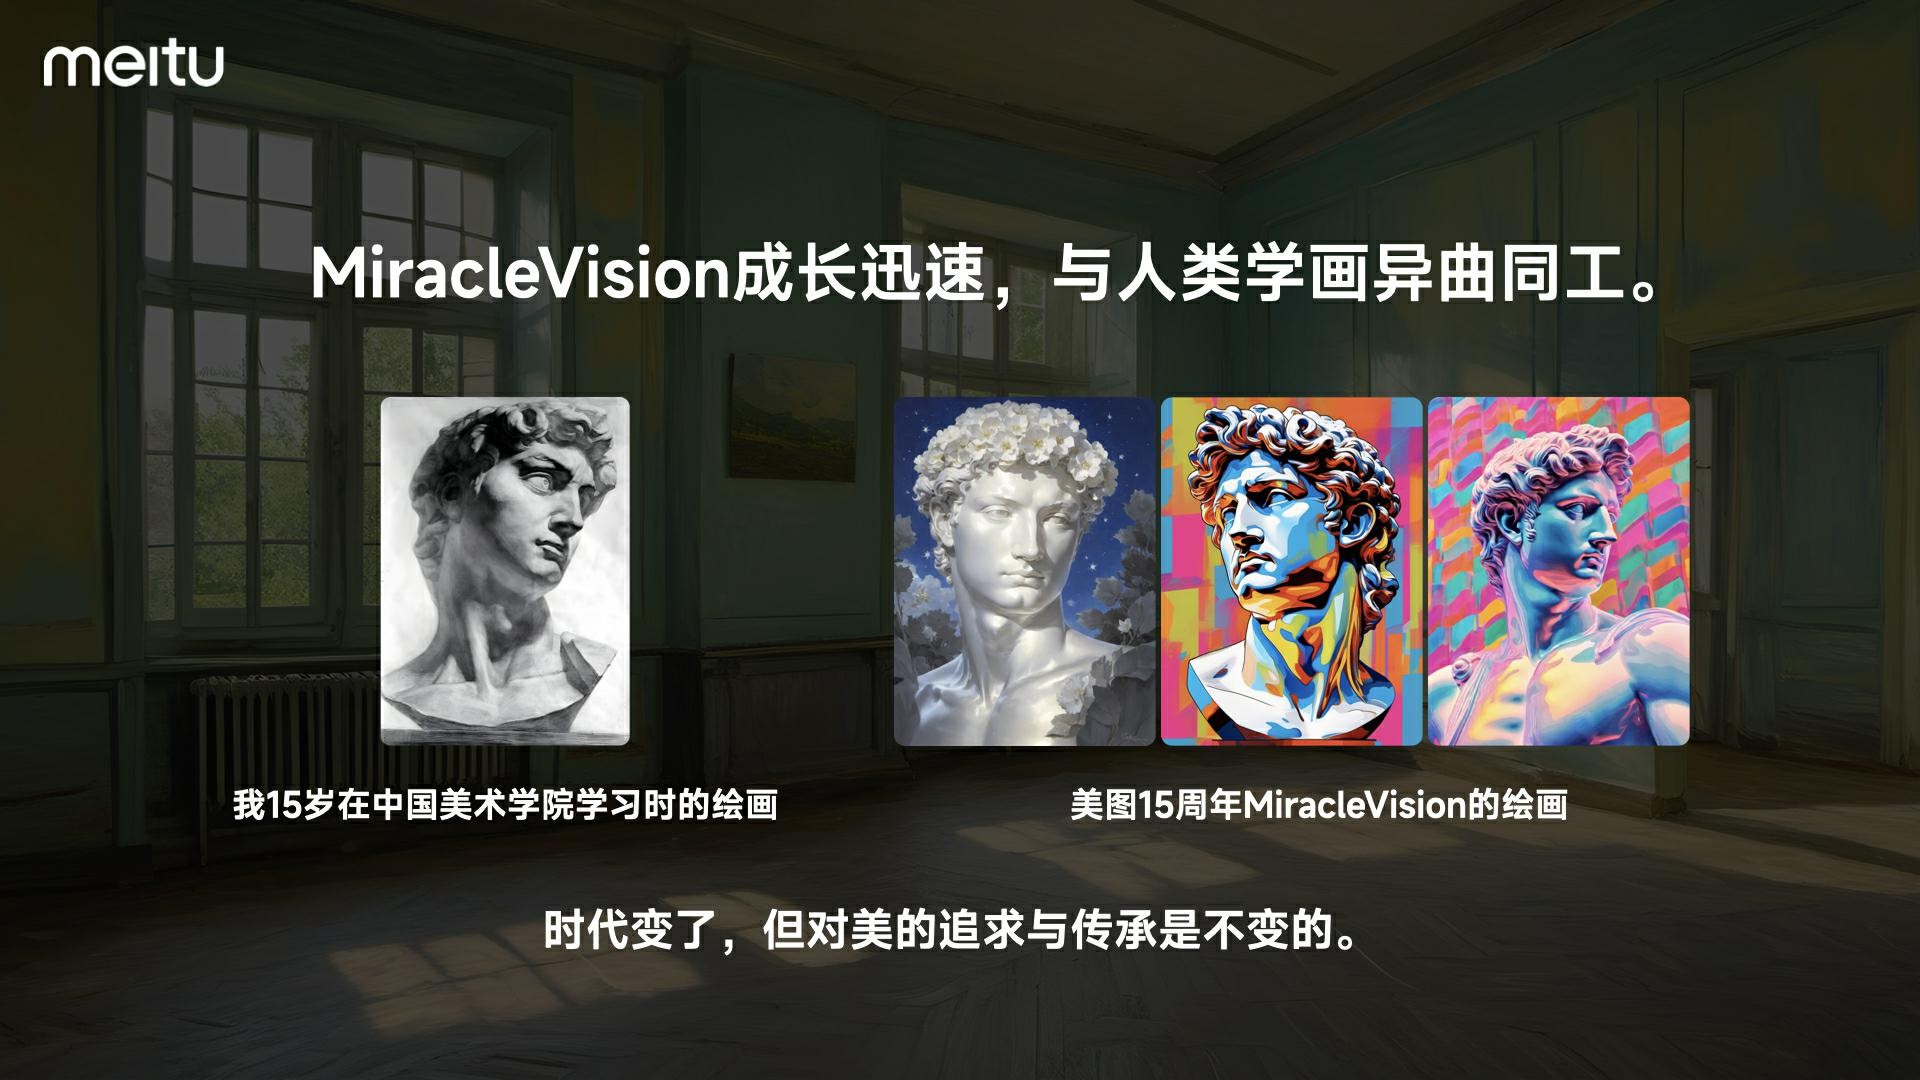 博鱼中国美图自研视觉大模型30发布全面应用于美图旗下影像与设计产品(图4)